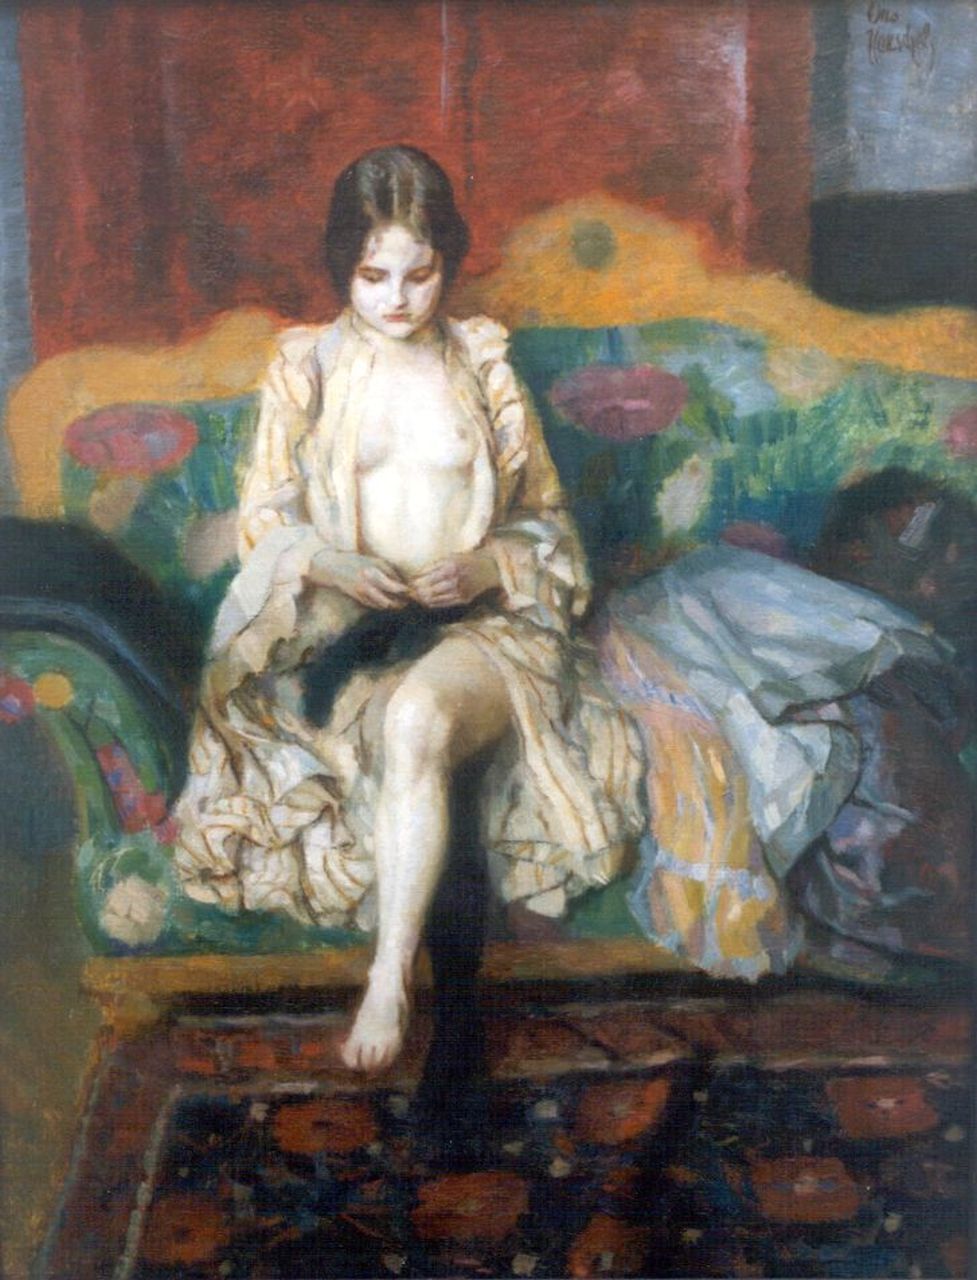 Herschel O.J.  | Otto J. Herschel, Jonge vrouw op een sofa, olieverf op doek 52,9 x 40,8 cm, gesigneerd rechtsboven